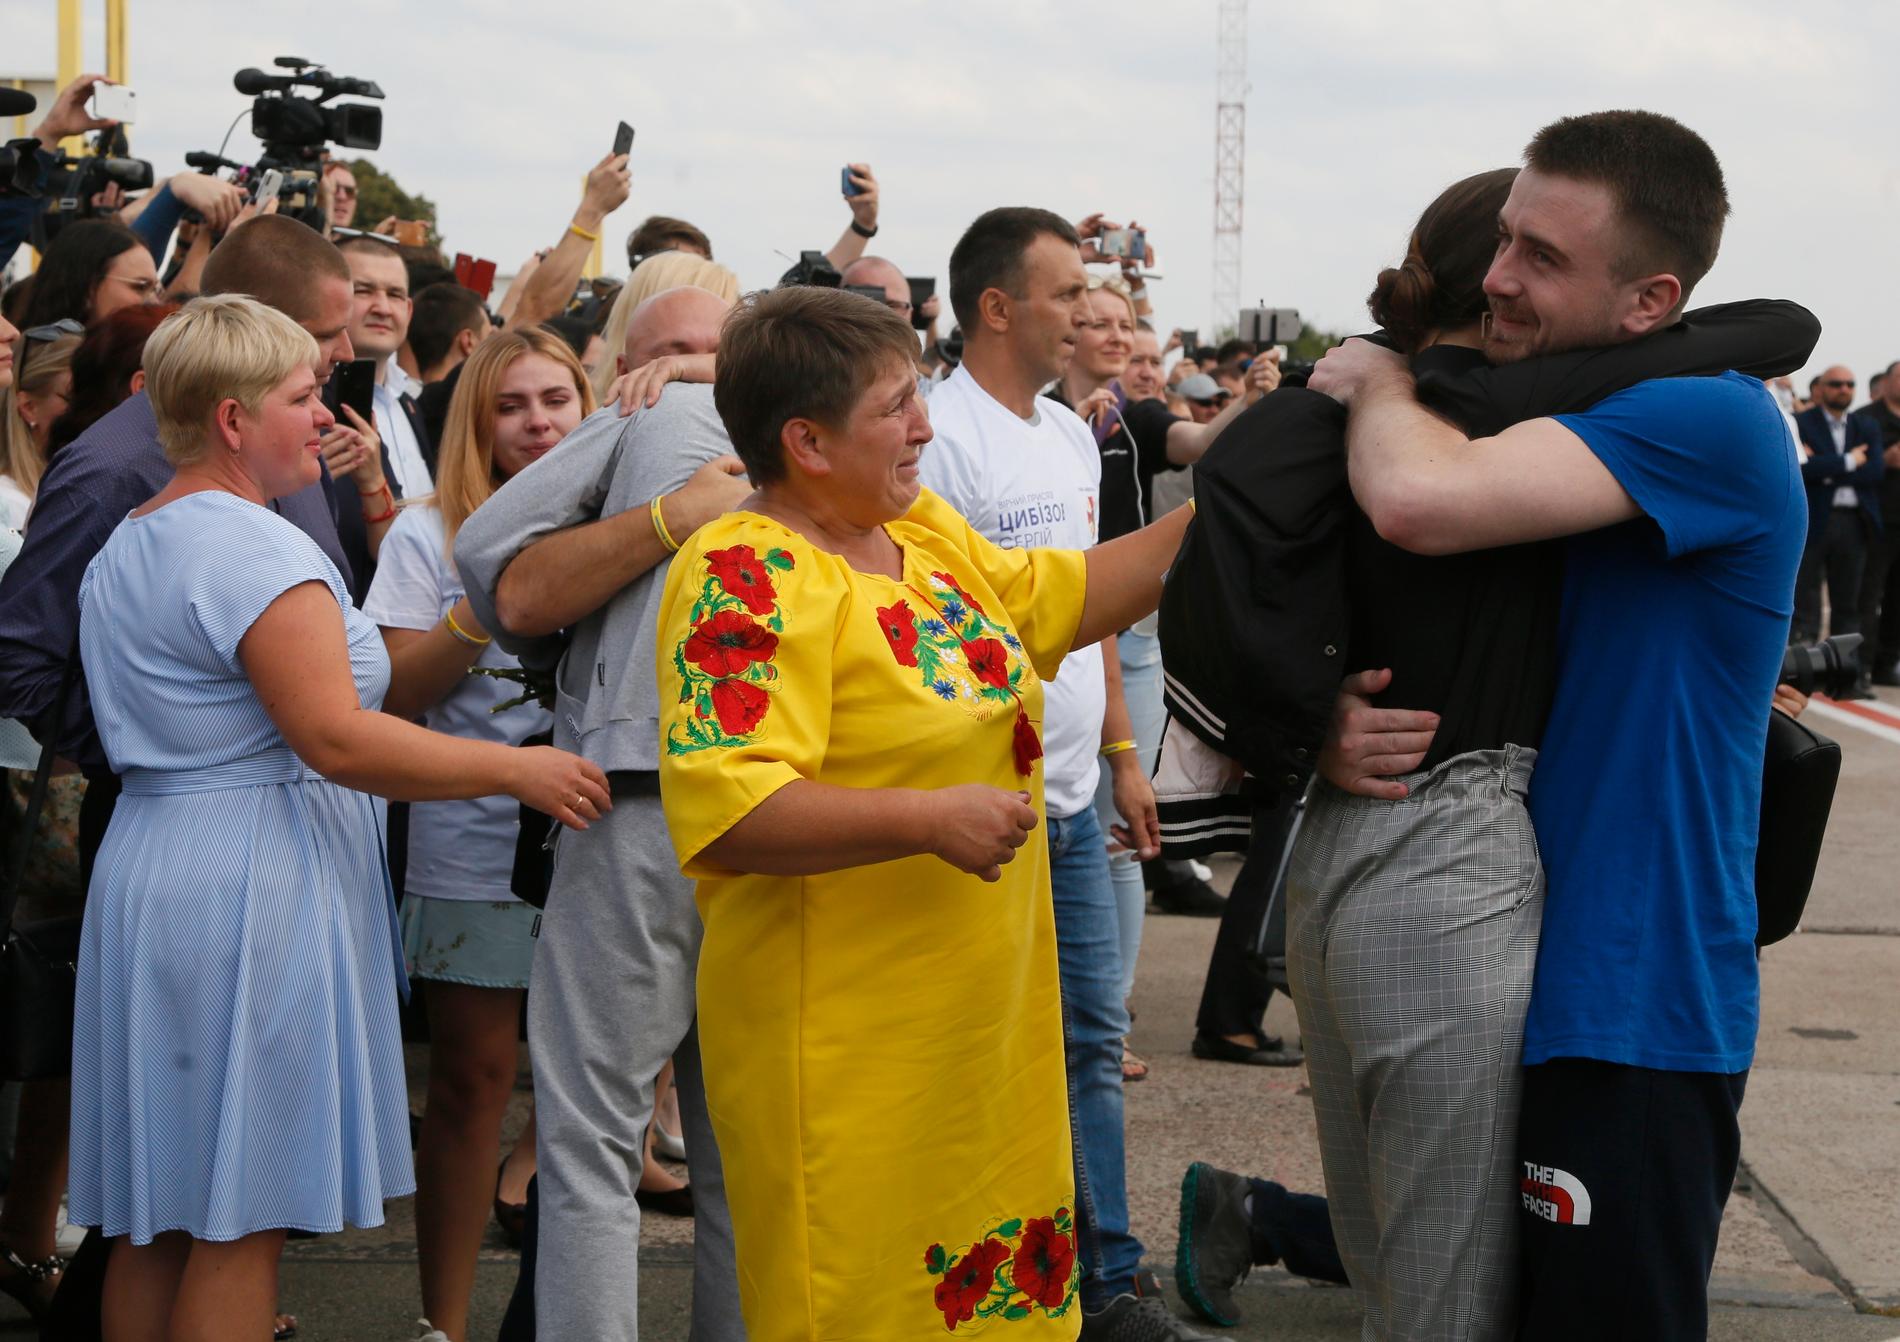 Känslosamma scener utspelade sig på flygplatsen när omkring 35 ukrainska fångar kom med plan från Ryssland.